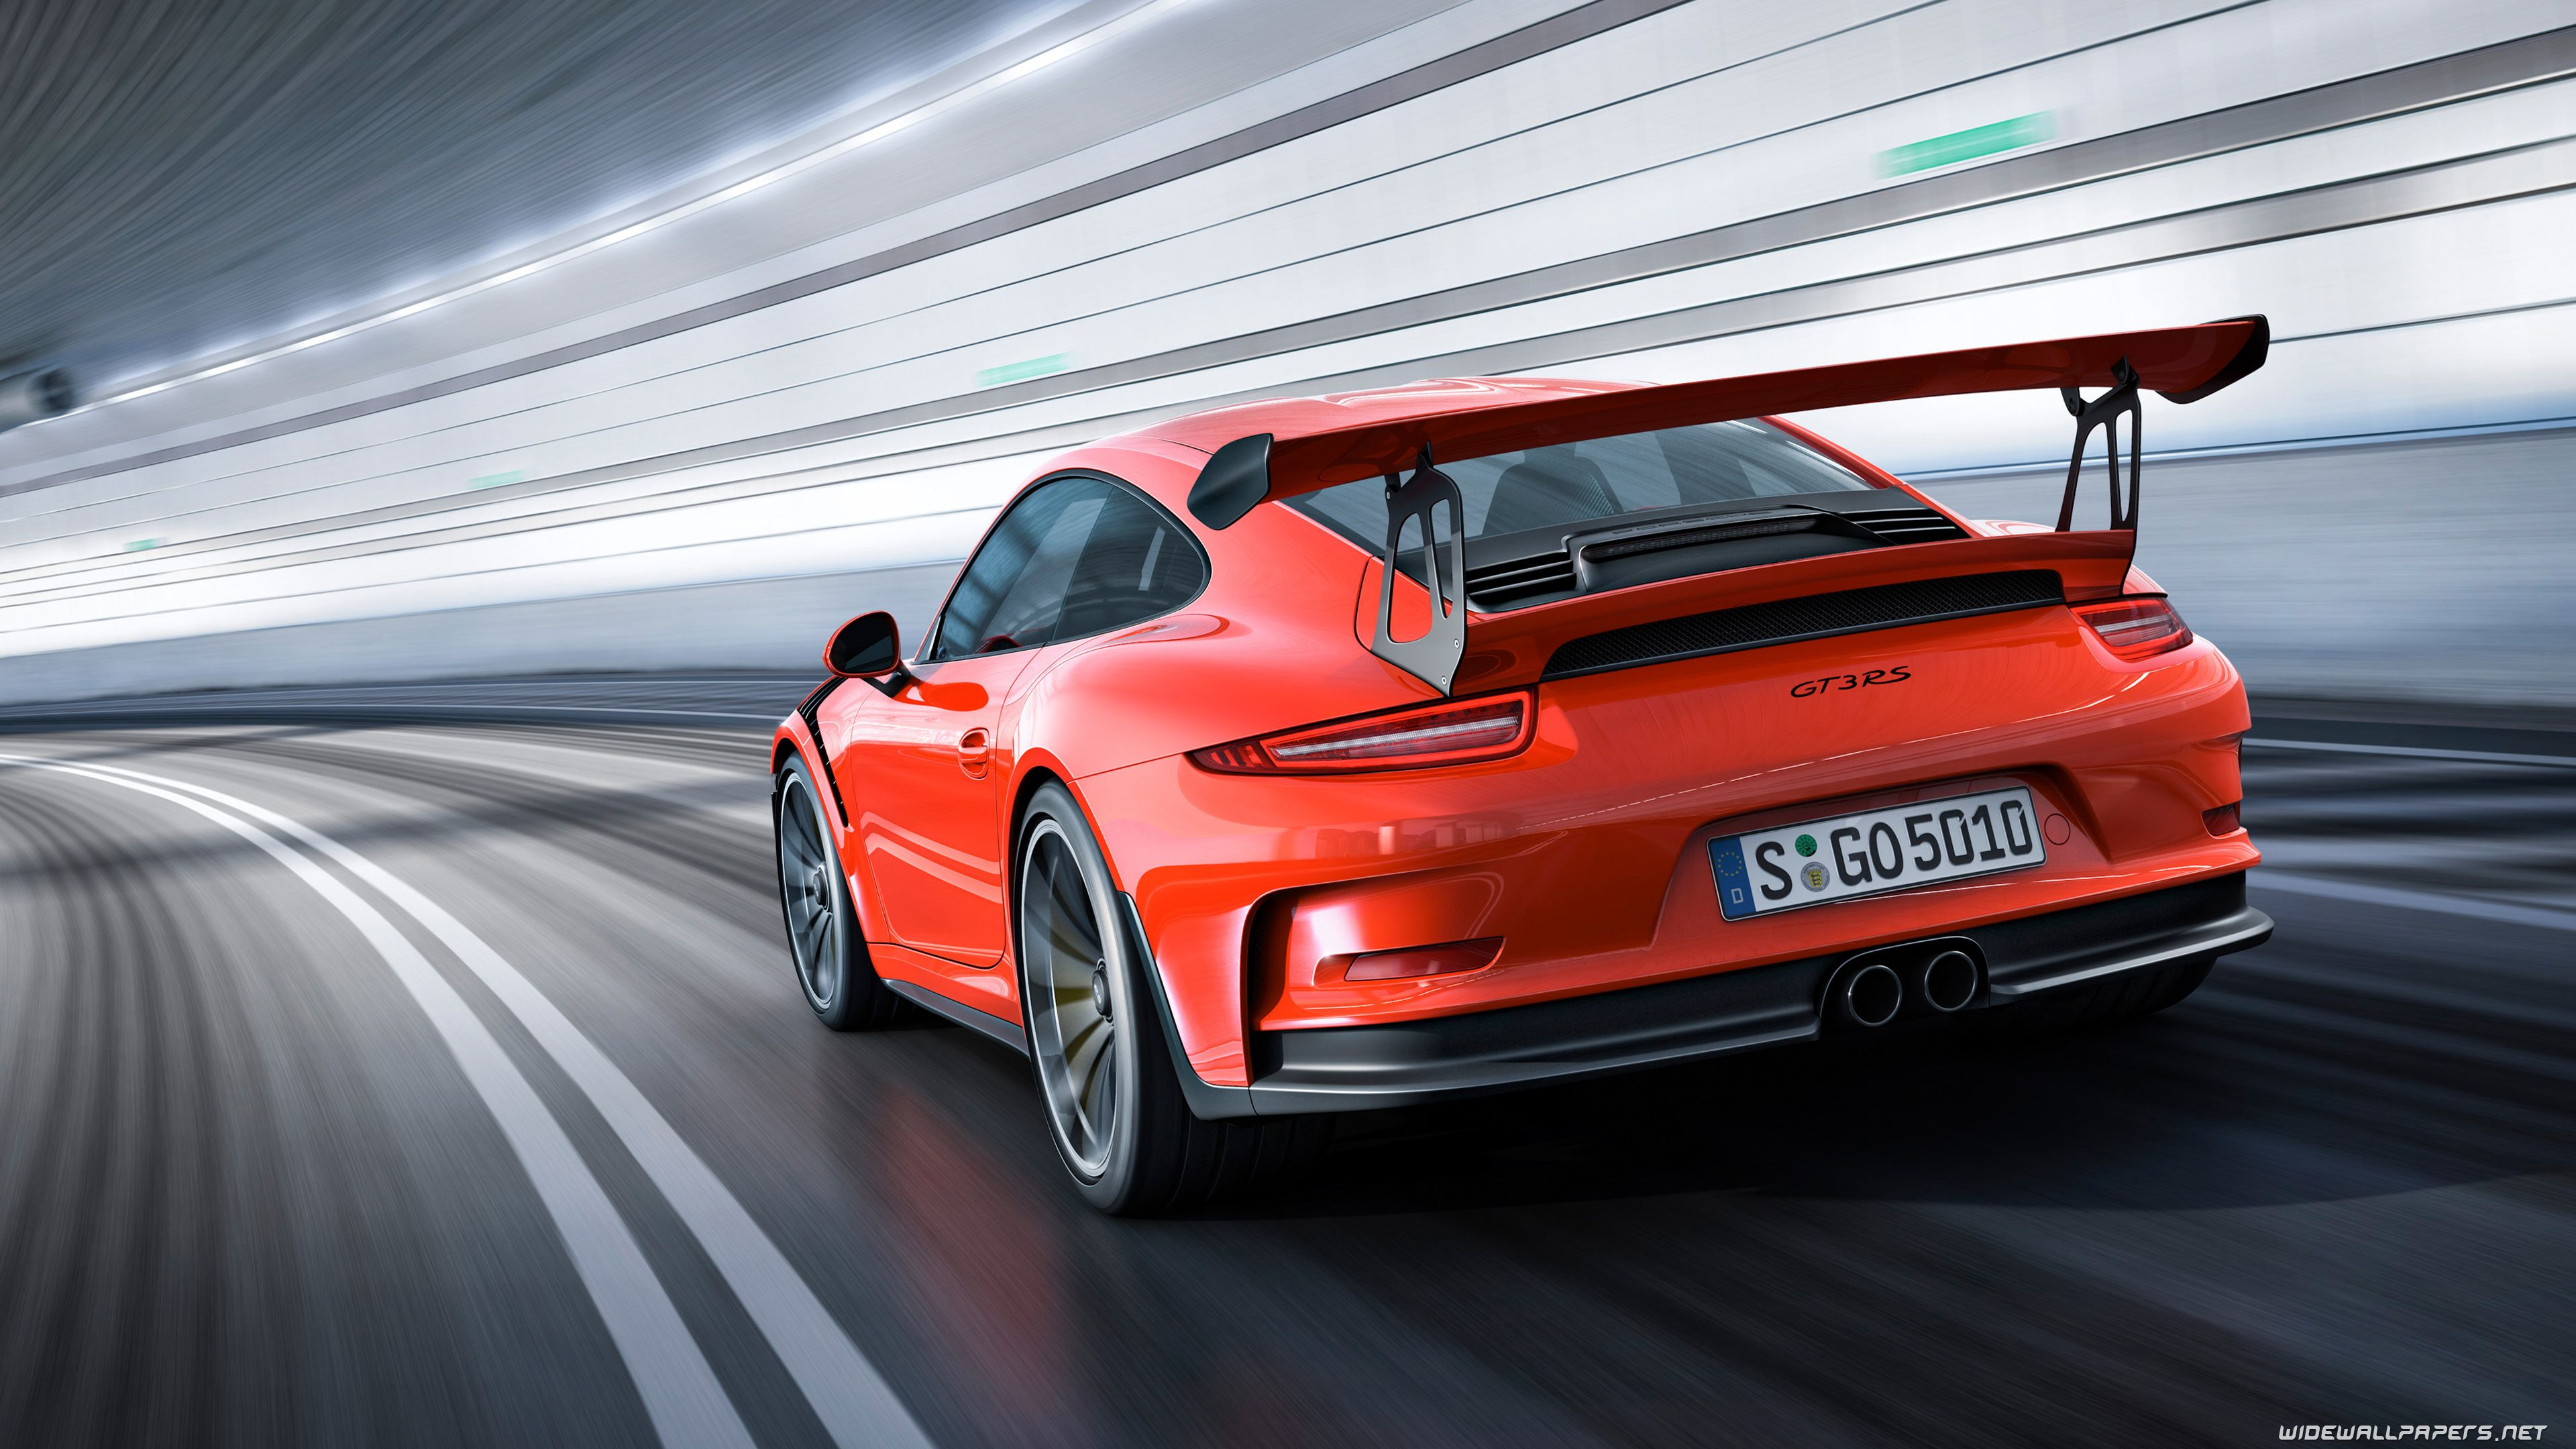 3840x2160 4K Ultra HD Porsche Wallpapers Top Free 4K Ultra HD Porsche Backgrounds